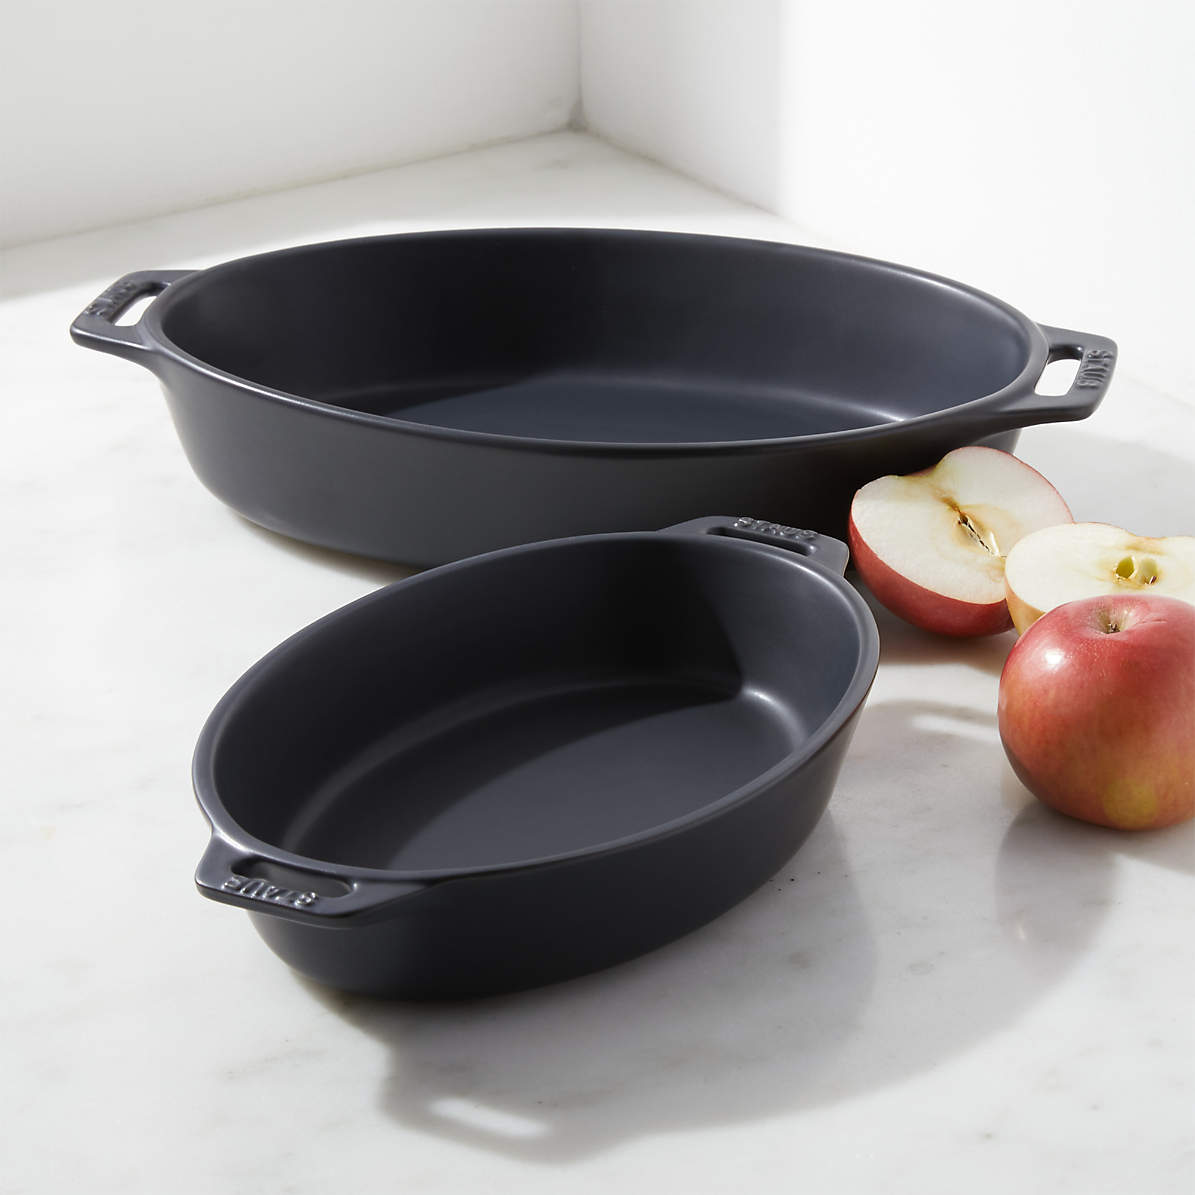 Marin Matte Black Ceramic Baking Dishes, Set of 3 + Reviews